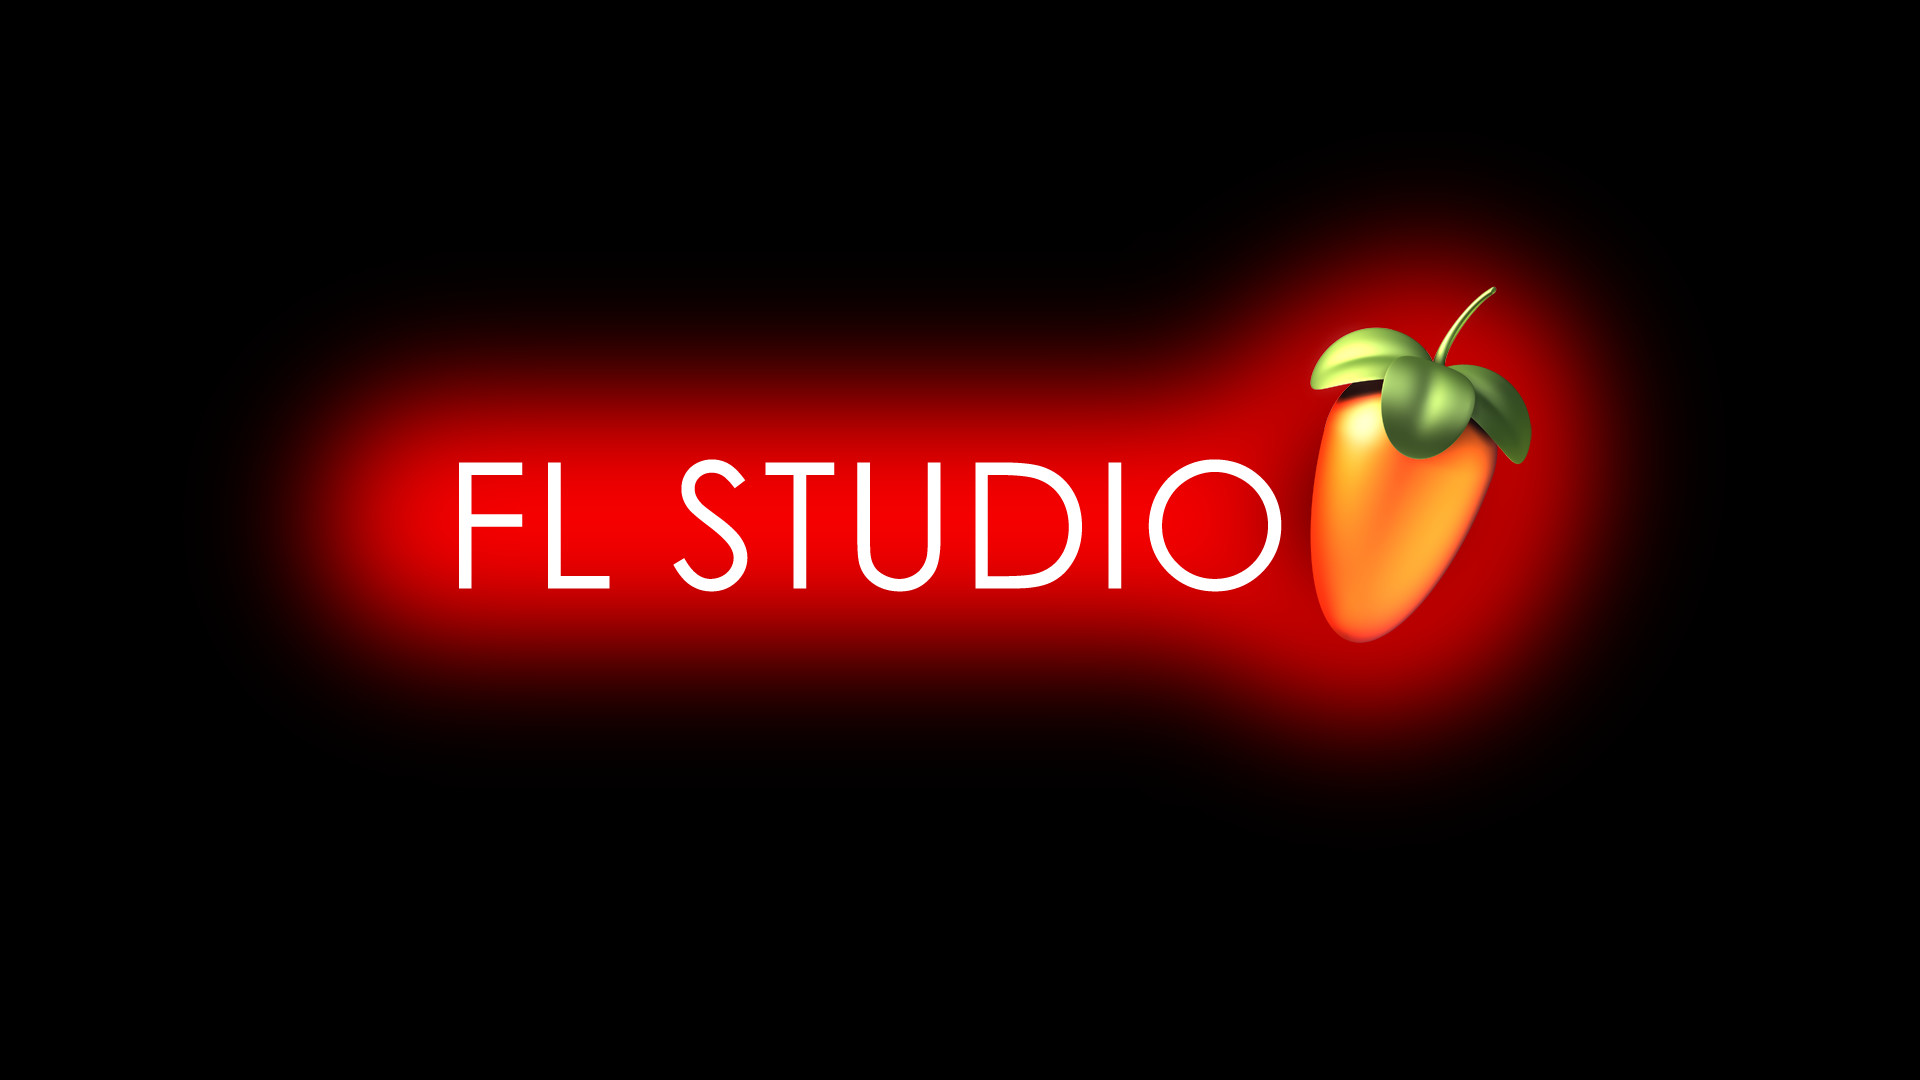 1920x1080 ... FL Studio Glow Red by Ozicks